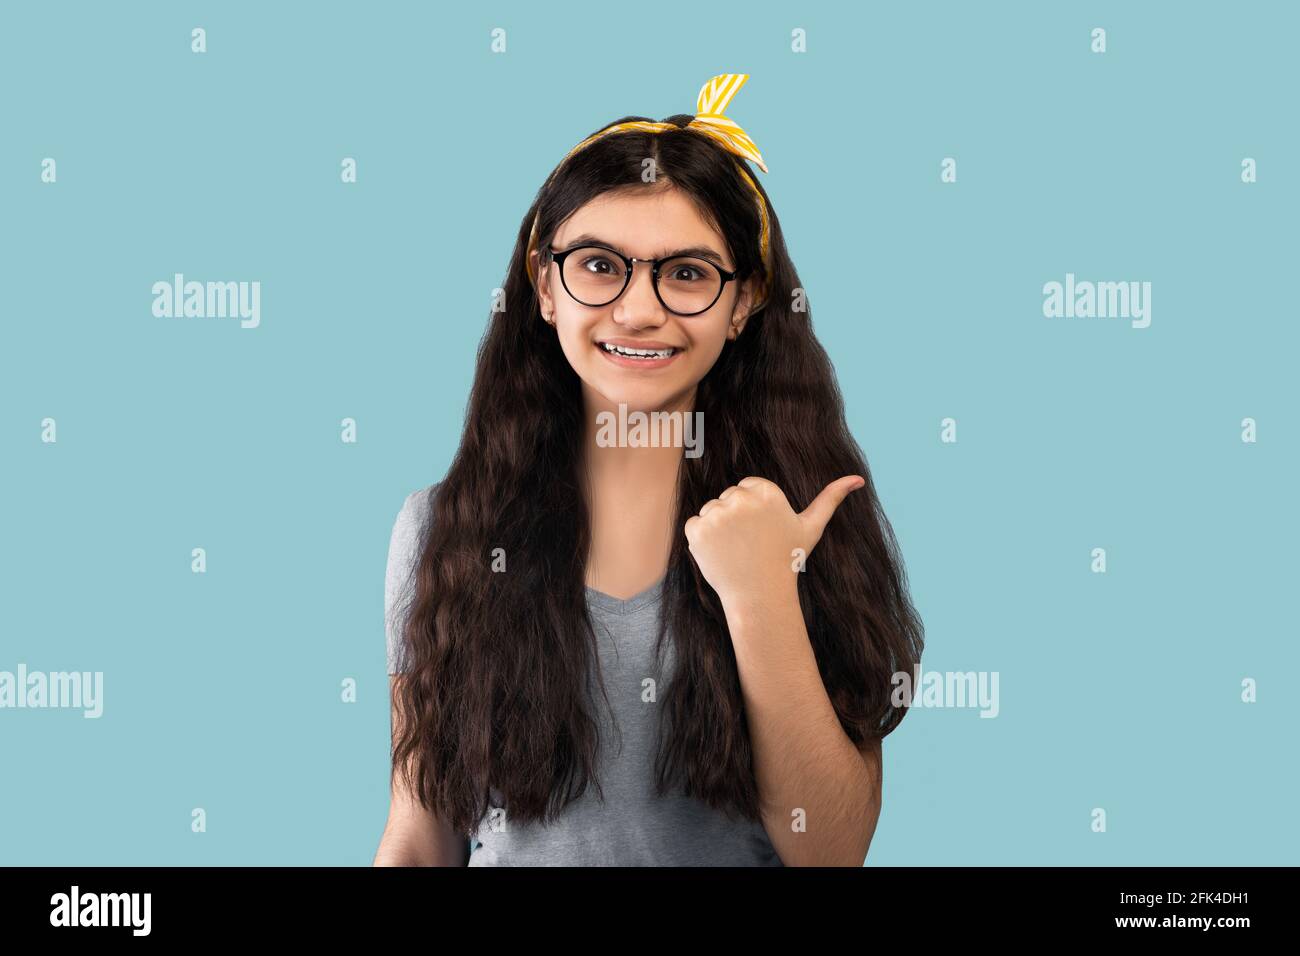 Glücklicher indischer Teenager zeigt zur Seite, mit dem Daumen nach oben auf blau studio-Hintergrund Stockfoto